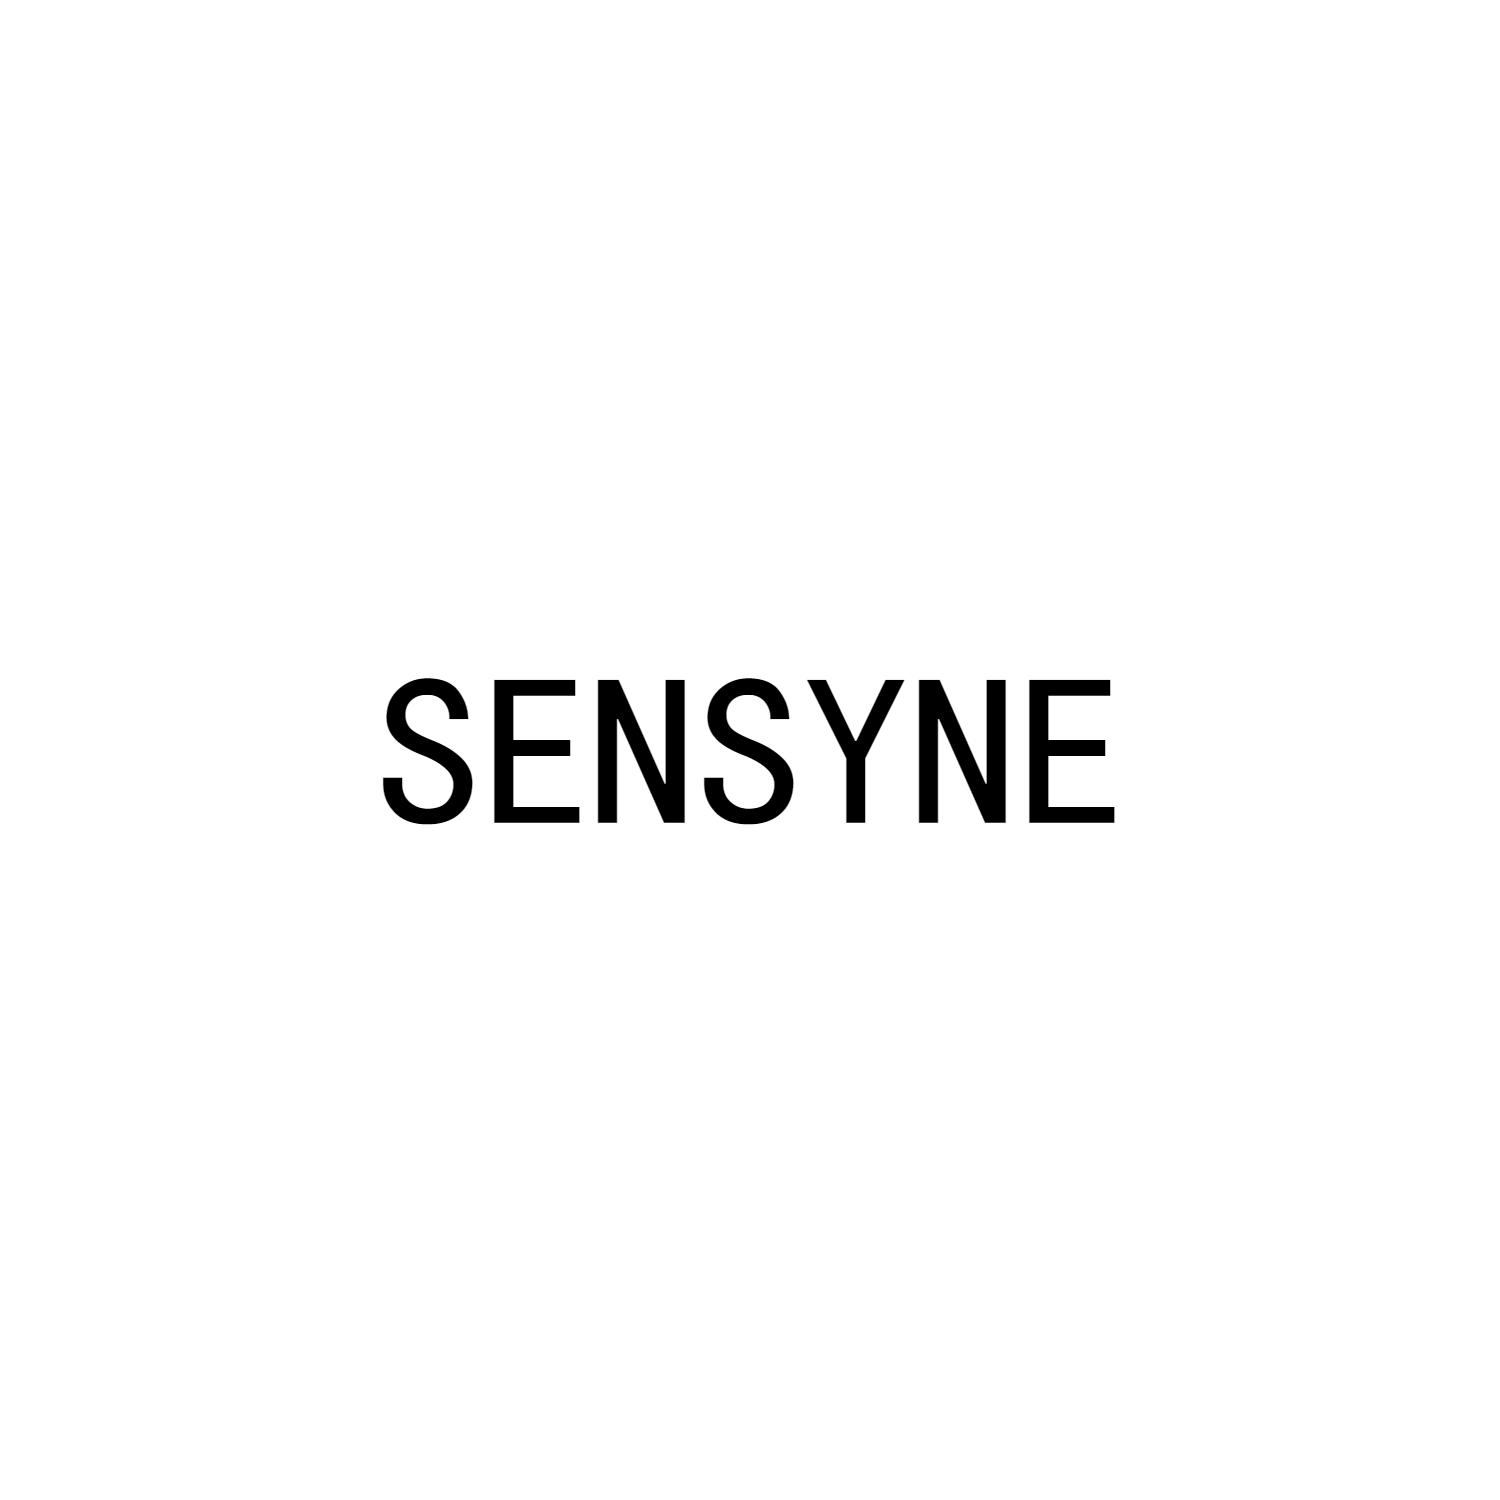 SENSYNE